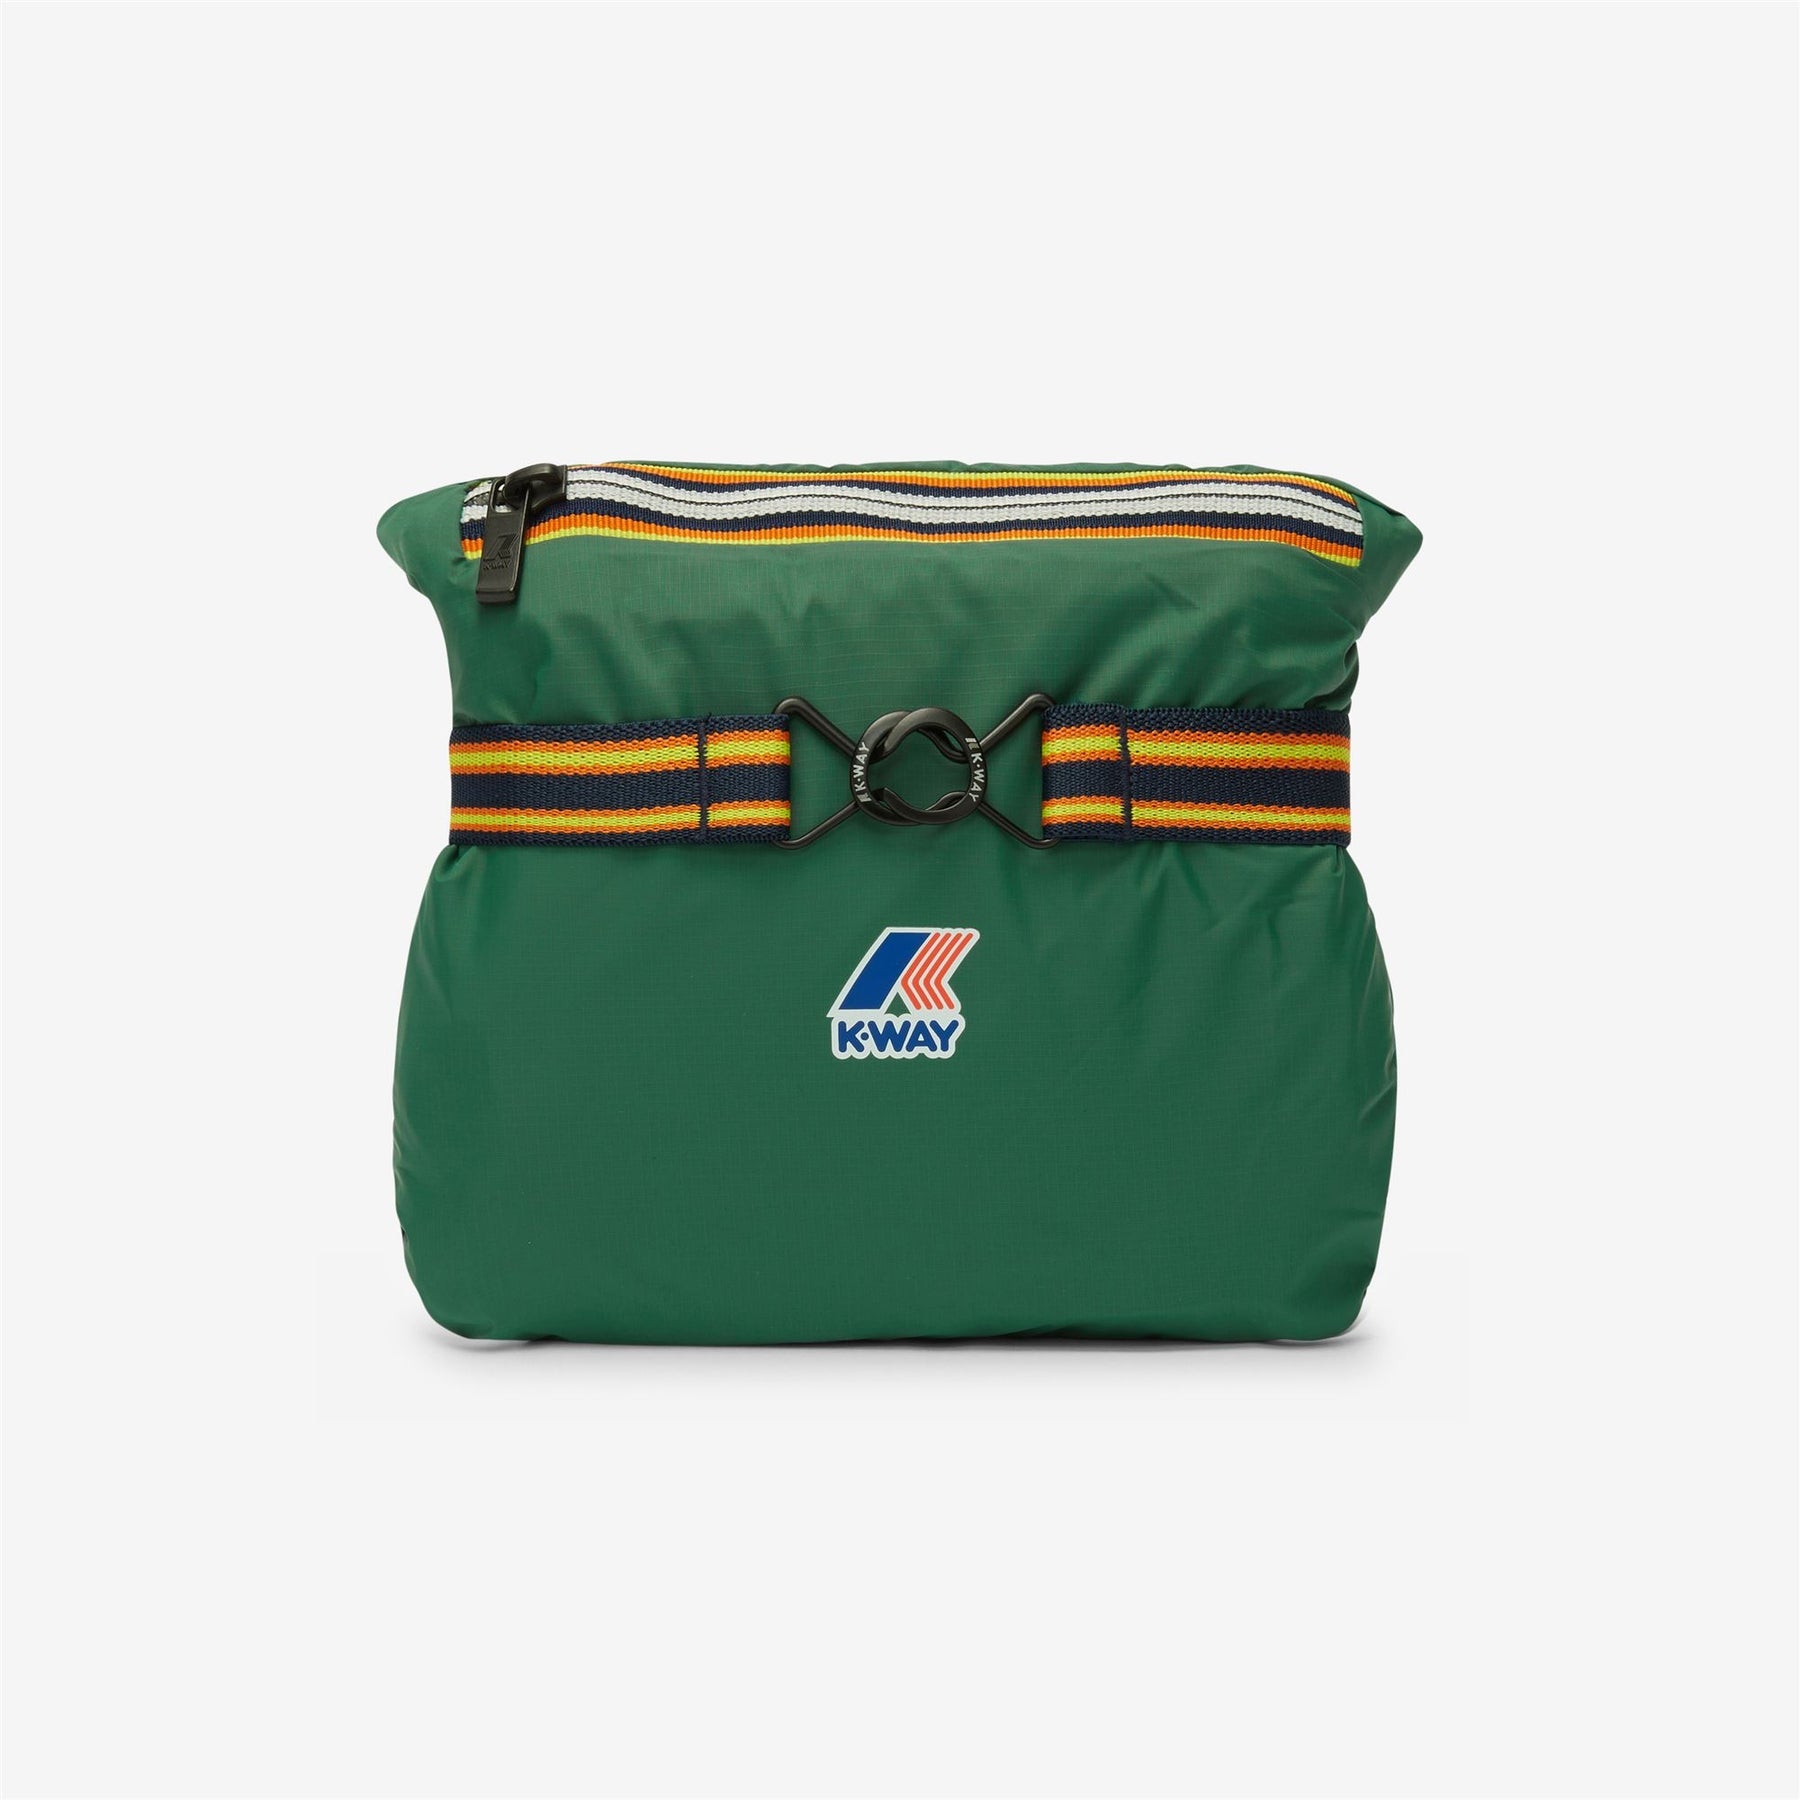 Claude - Unisex Packable Full Zip Waterproof  Rain Jacket in Green Dark